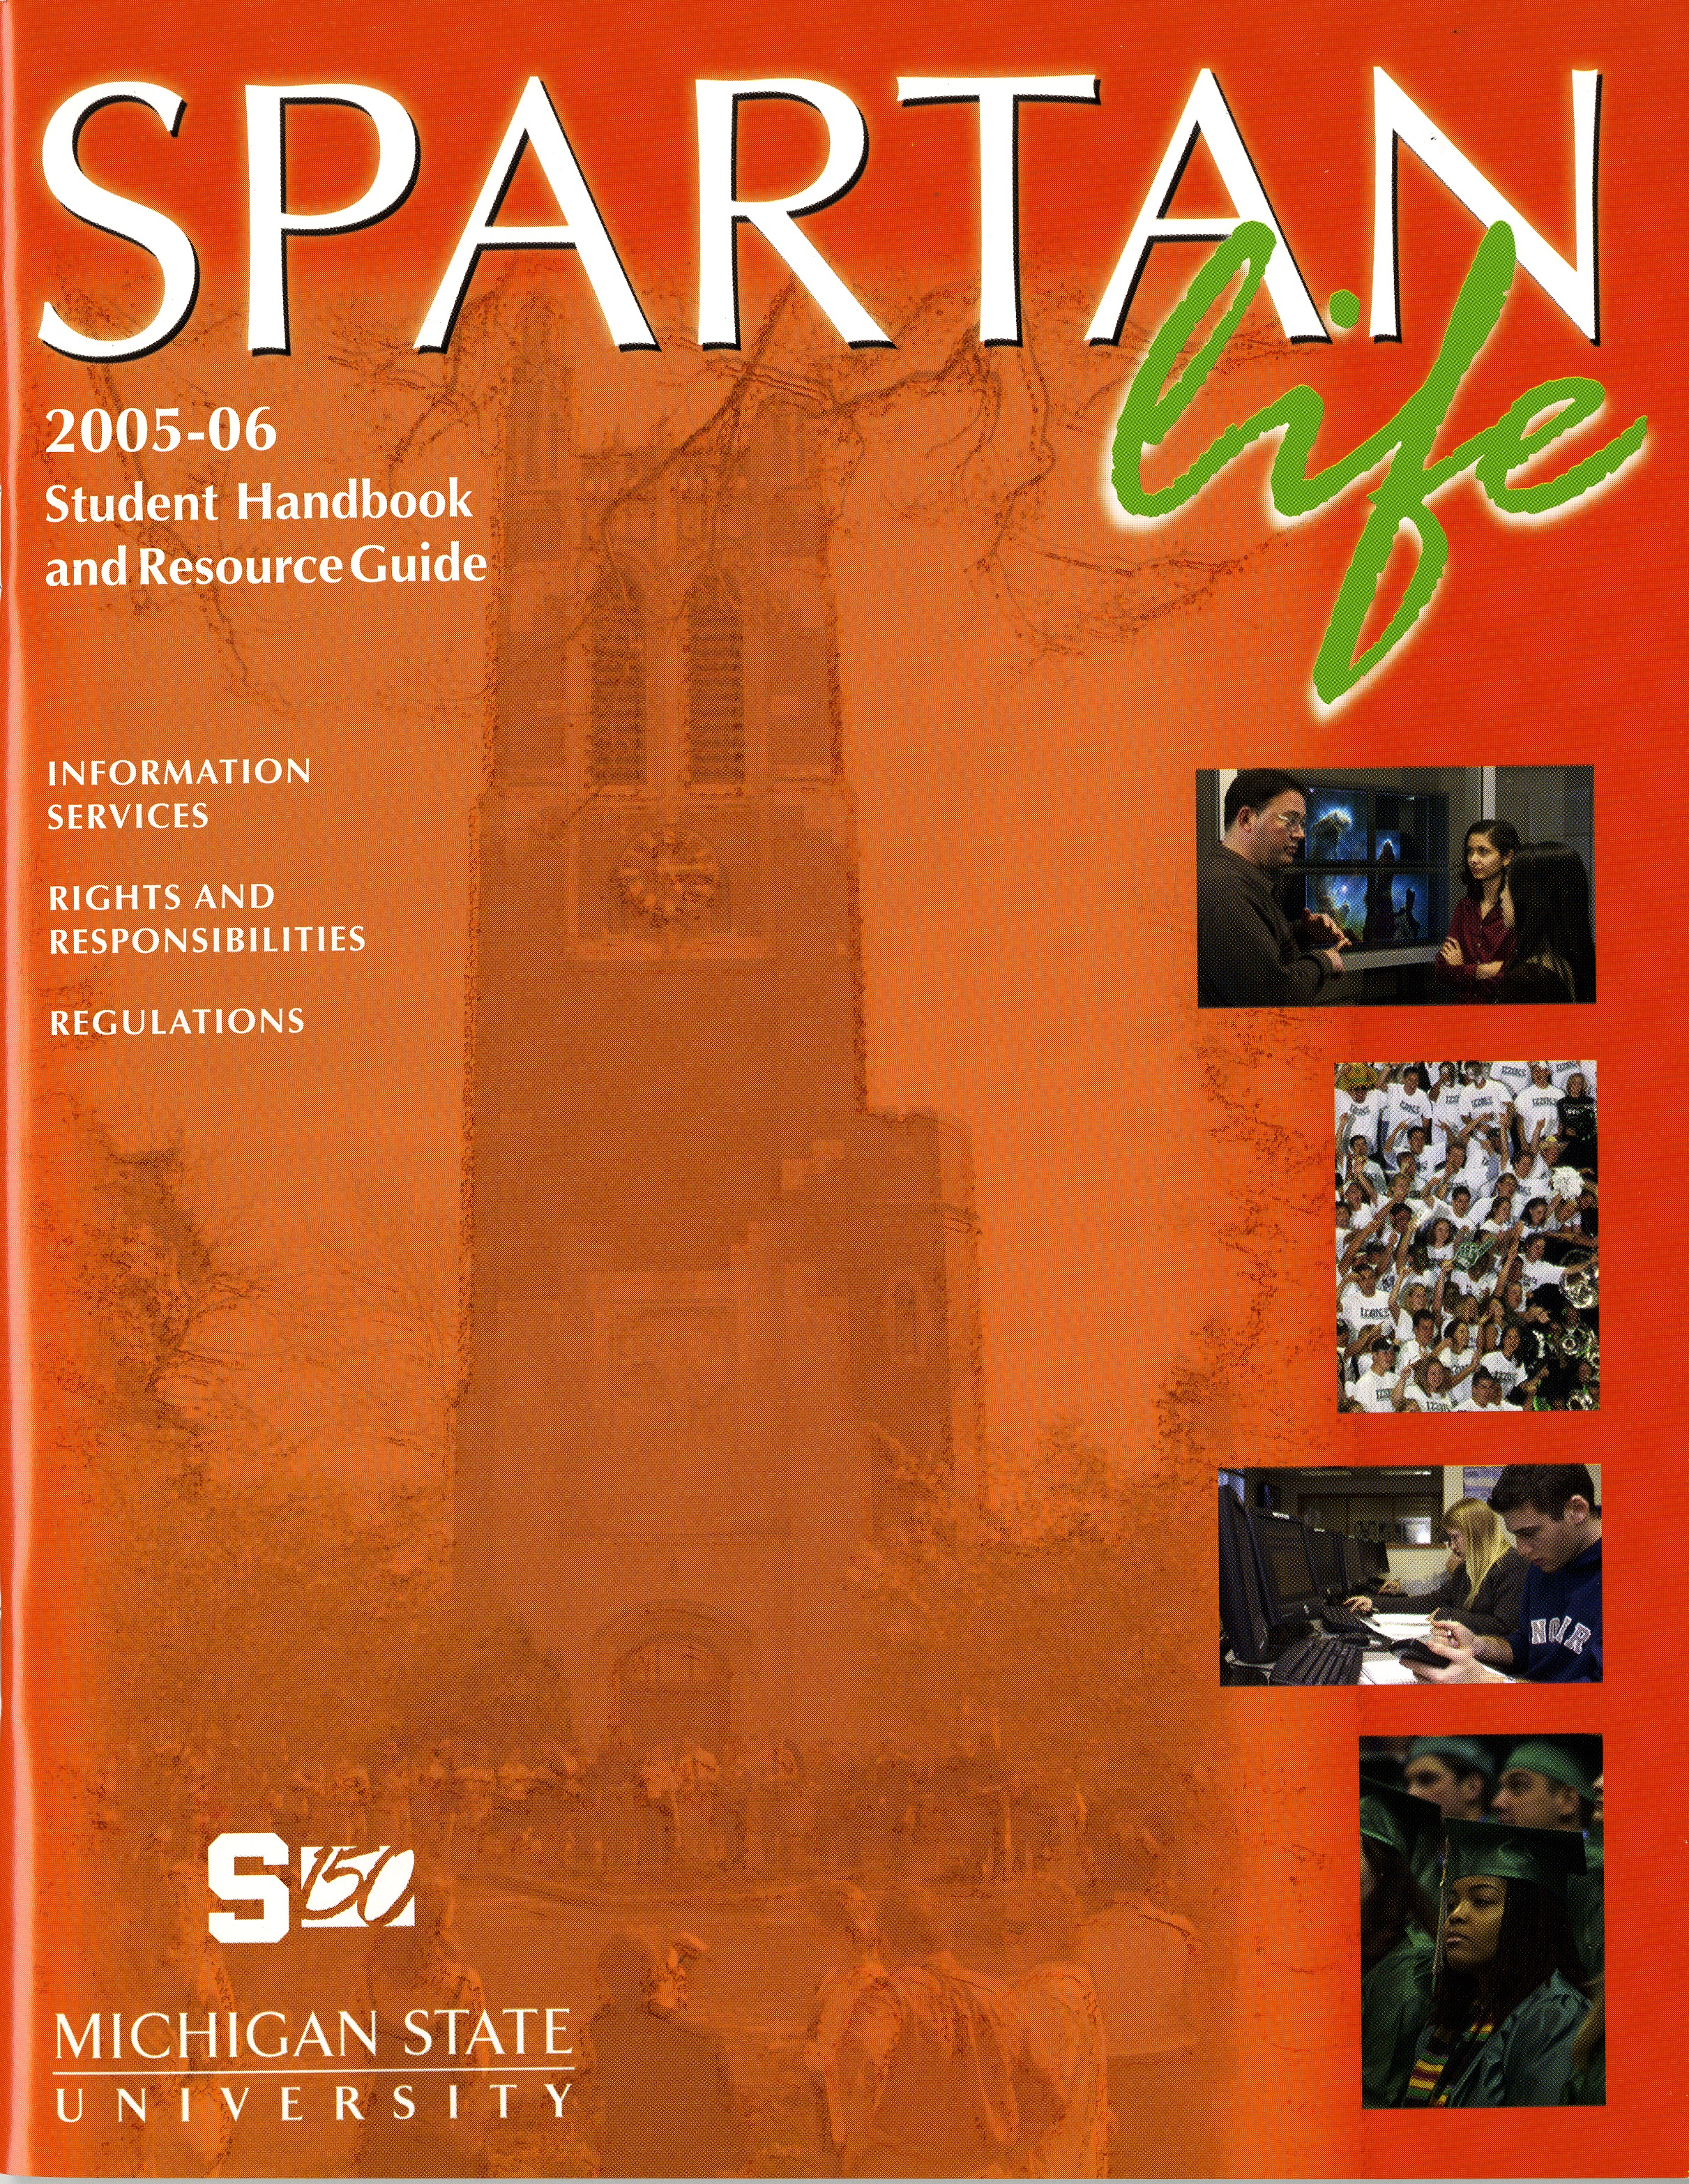 Student Handbook, 2005-2006